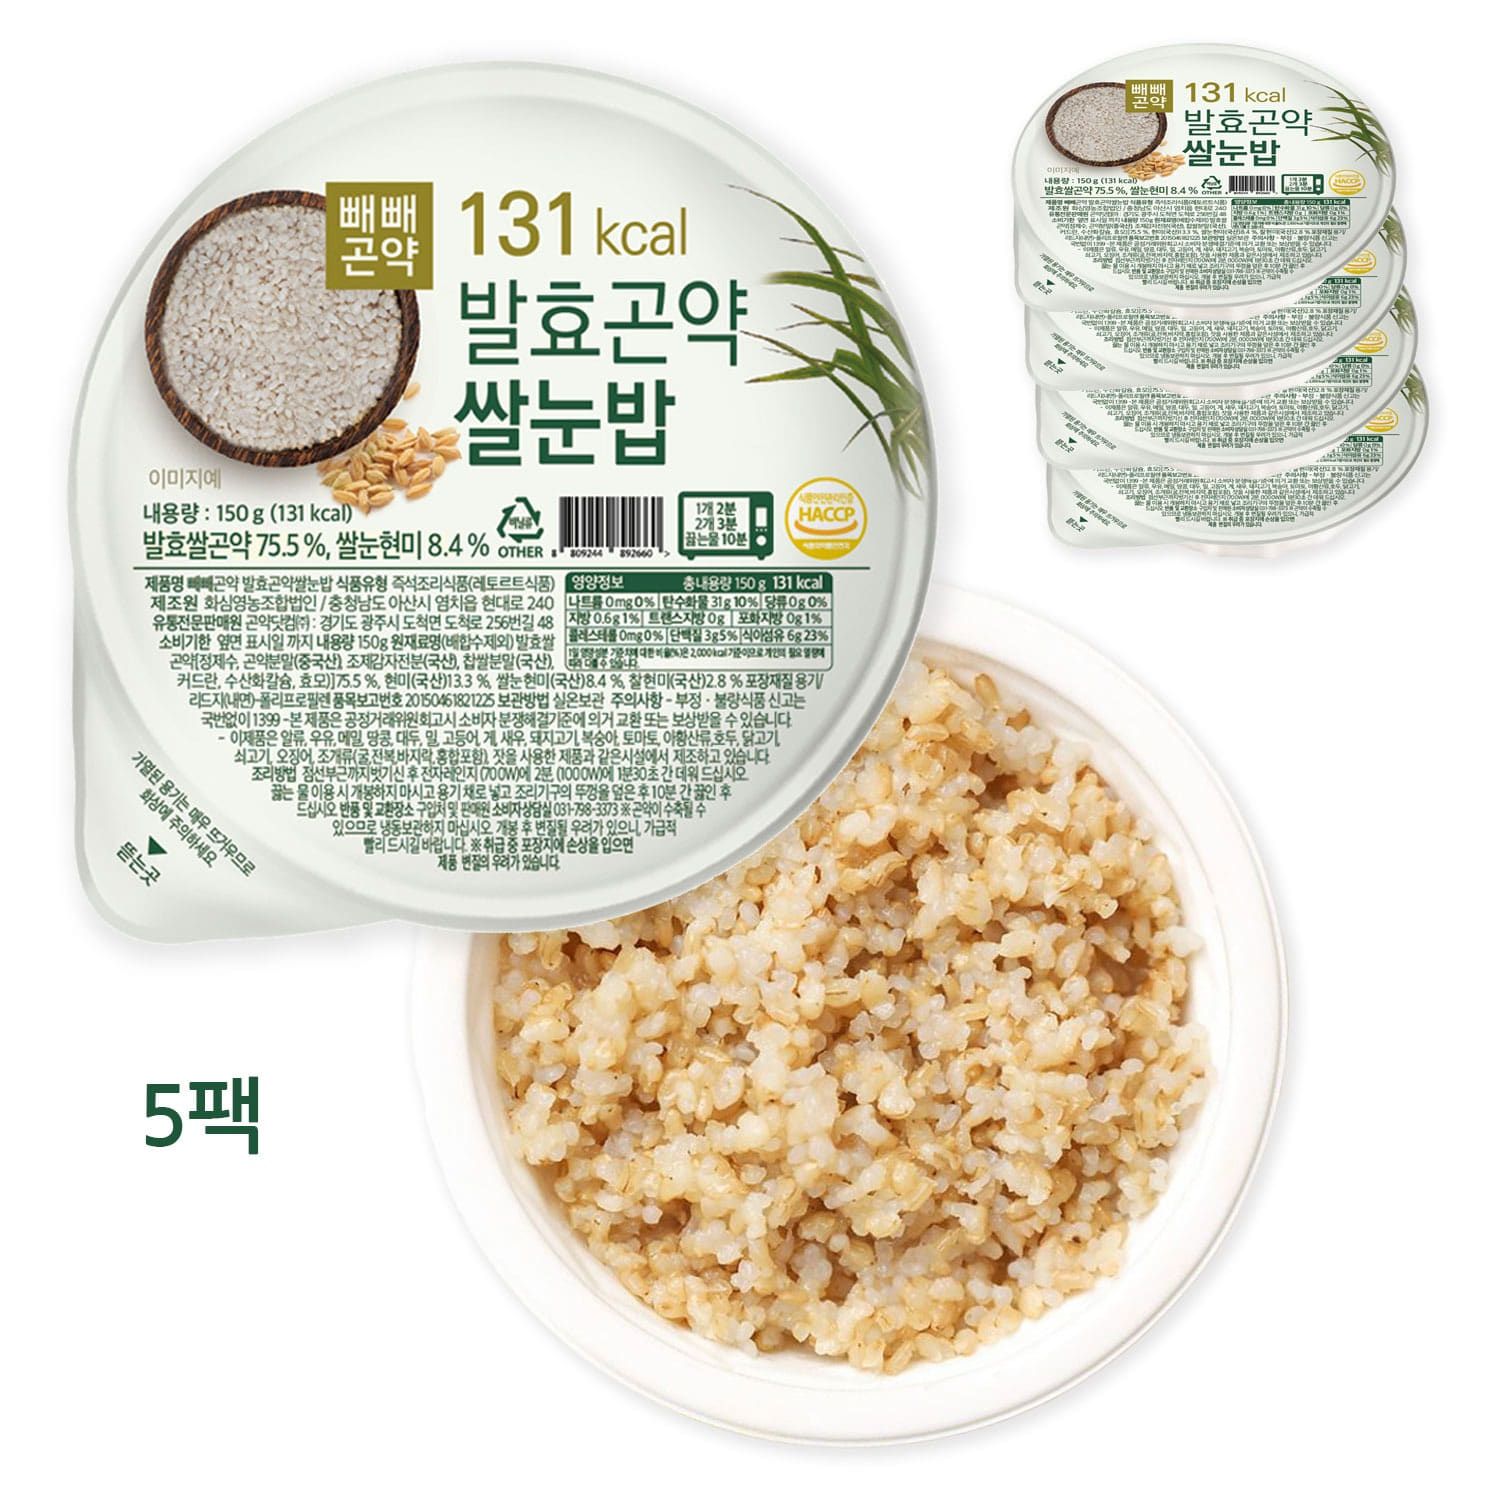 빼빼곤약 발효곤약쌀눈밥 150g x 5팩 - 저칼로리 발효곤약밥에 쌀눈의 효능을 더하다